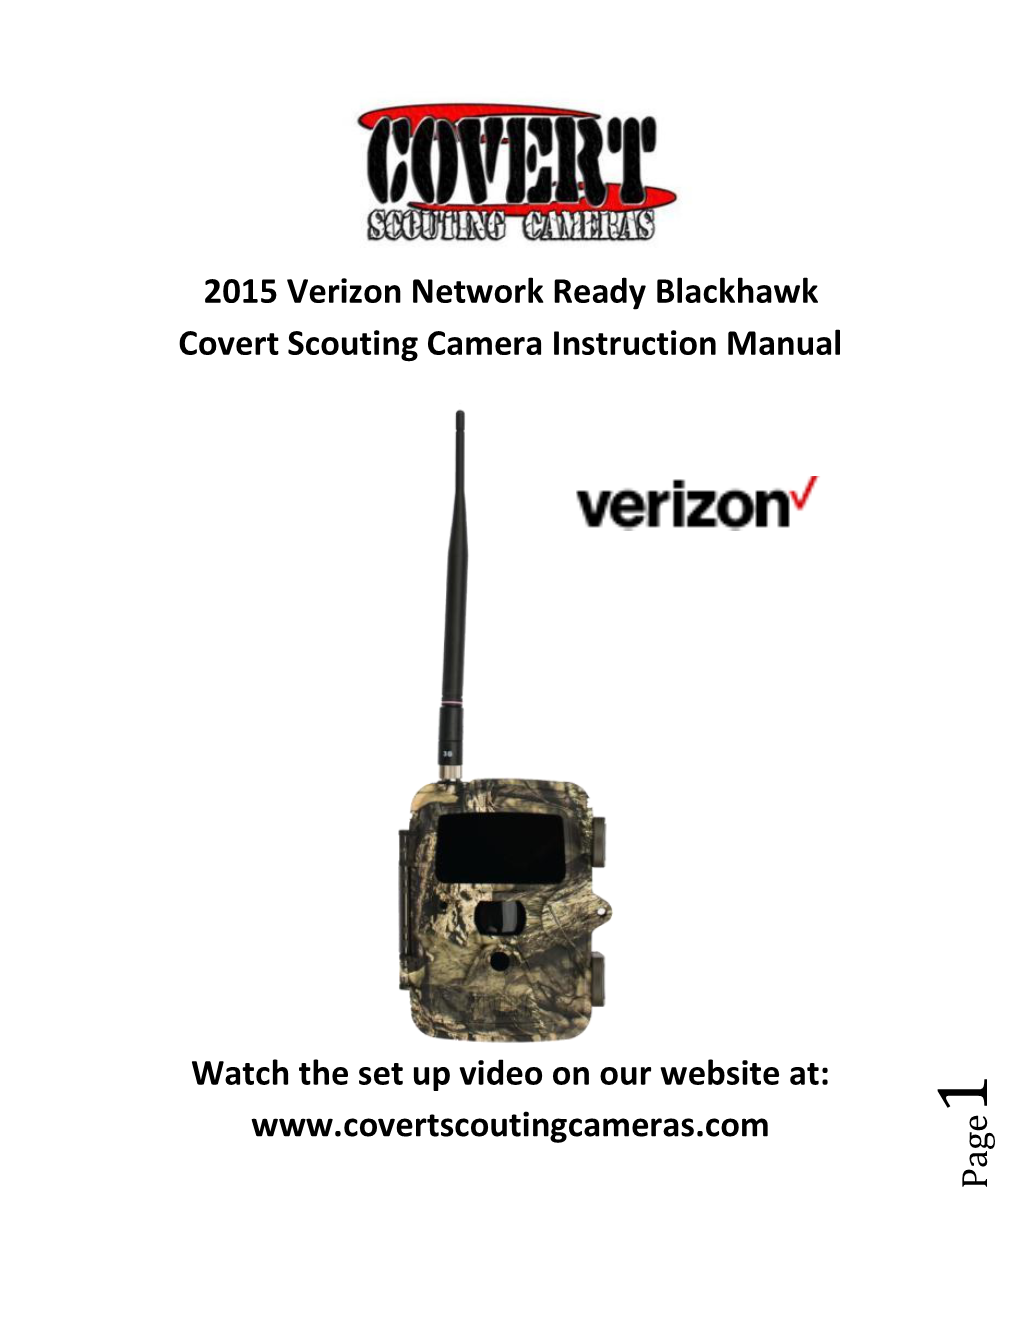 Page 2015 Verizon Network Ready Blackhawk Covert Scouting